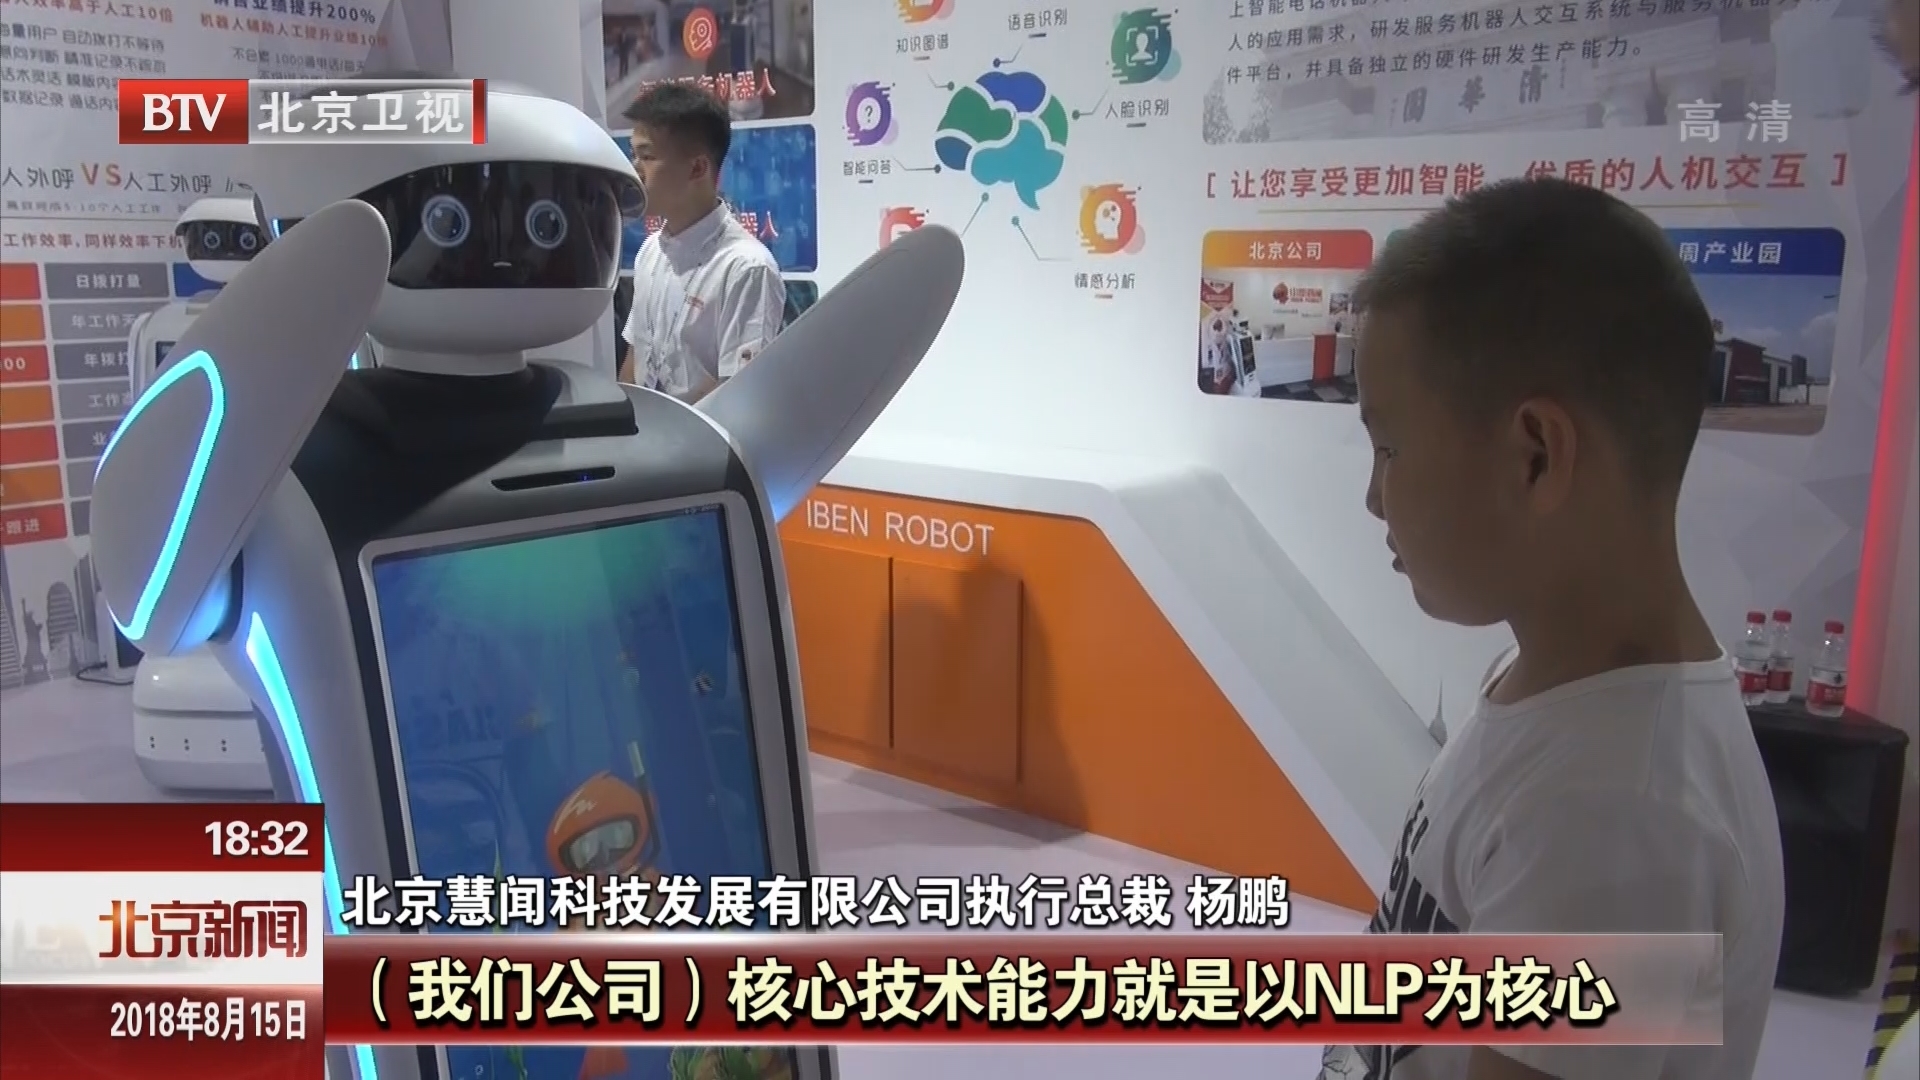 2018年世界机器人大会开幕 到2020年北京机器人产业收入将达120亿至150亿元